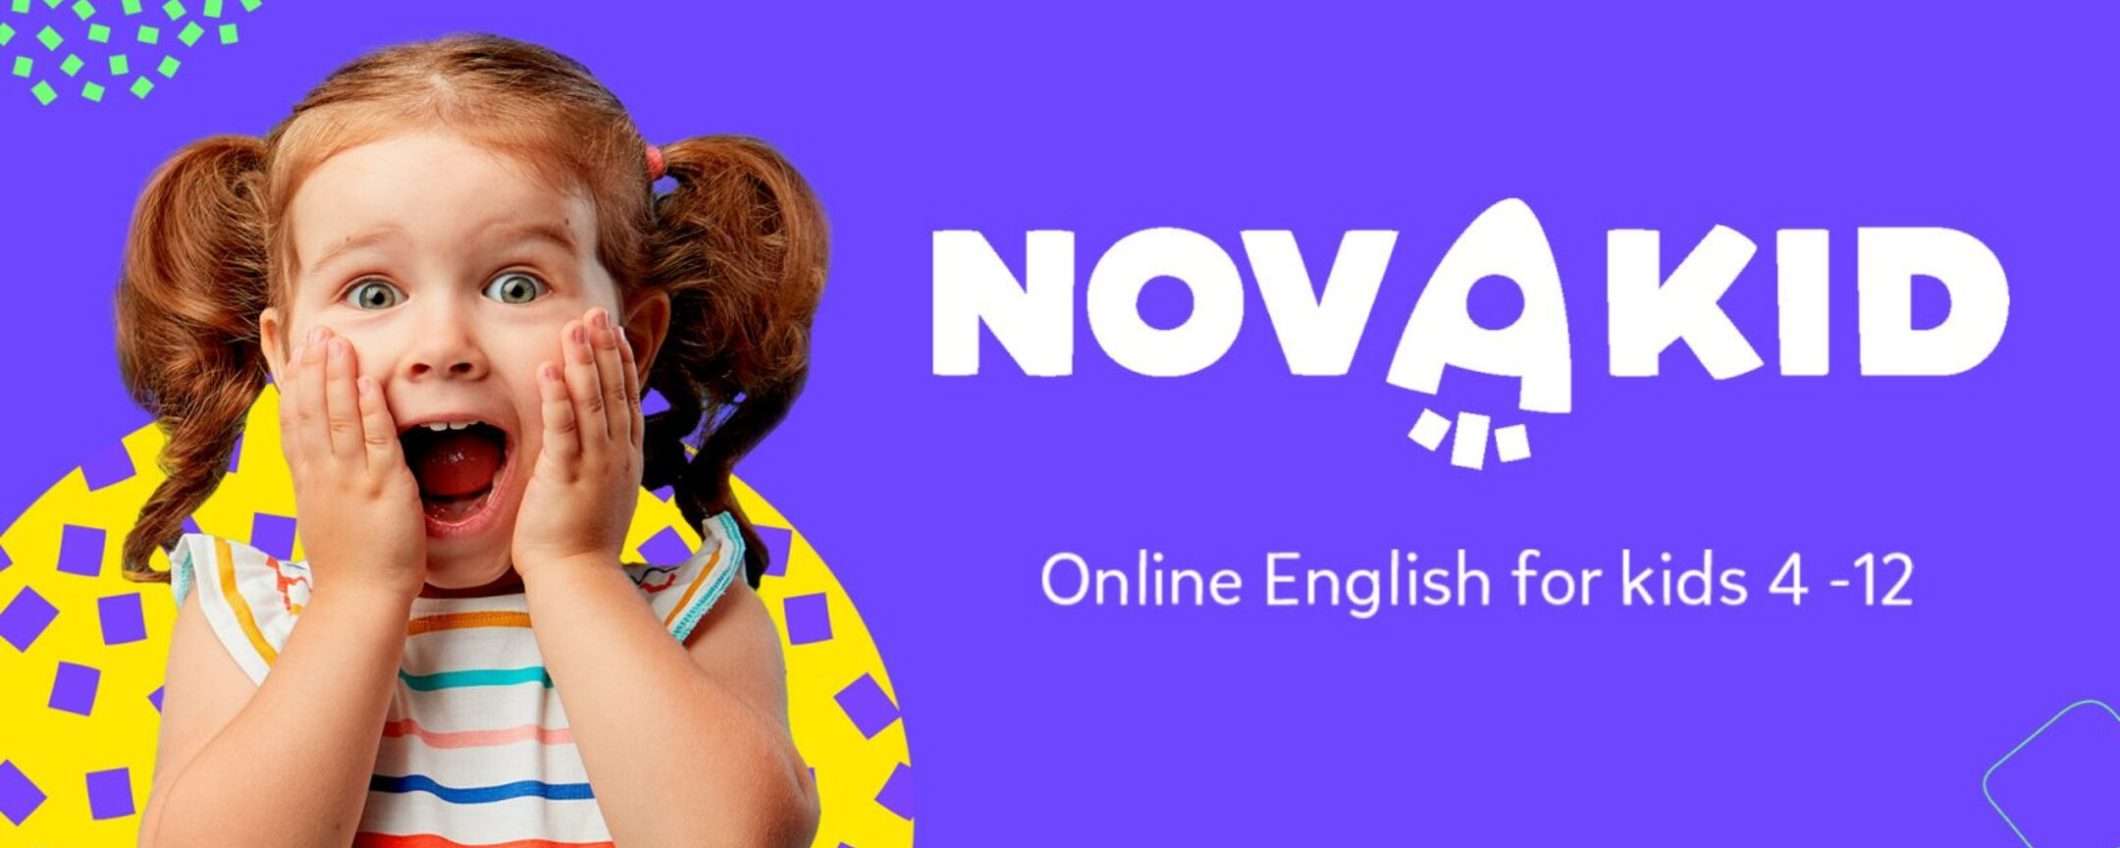 Impara l'inglese online: corso divertente per bambini con uno sconto del 15%